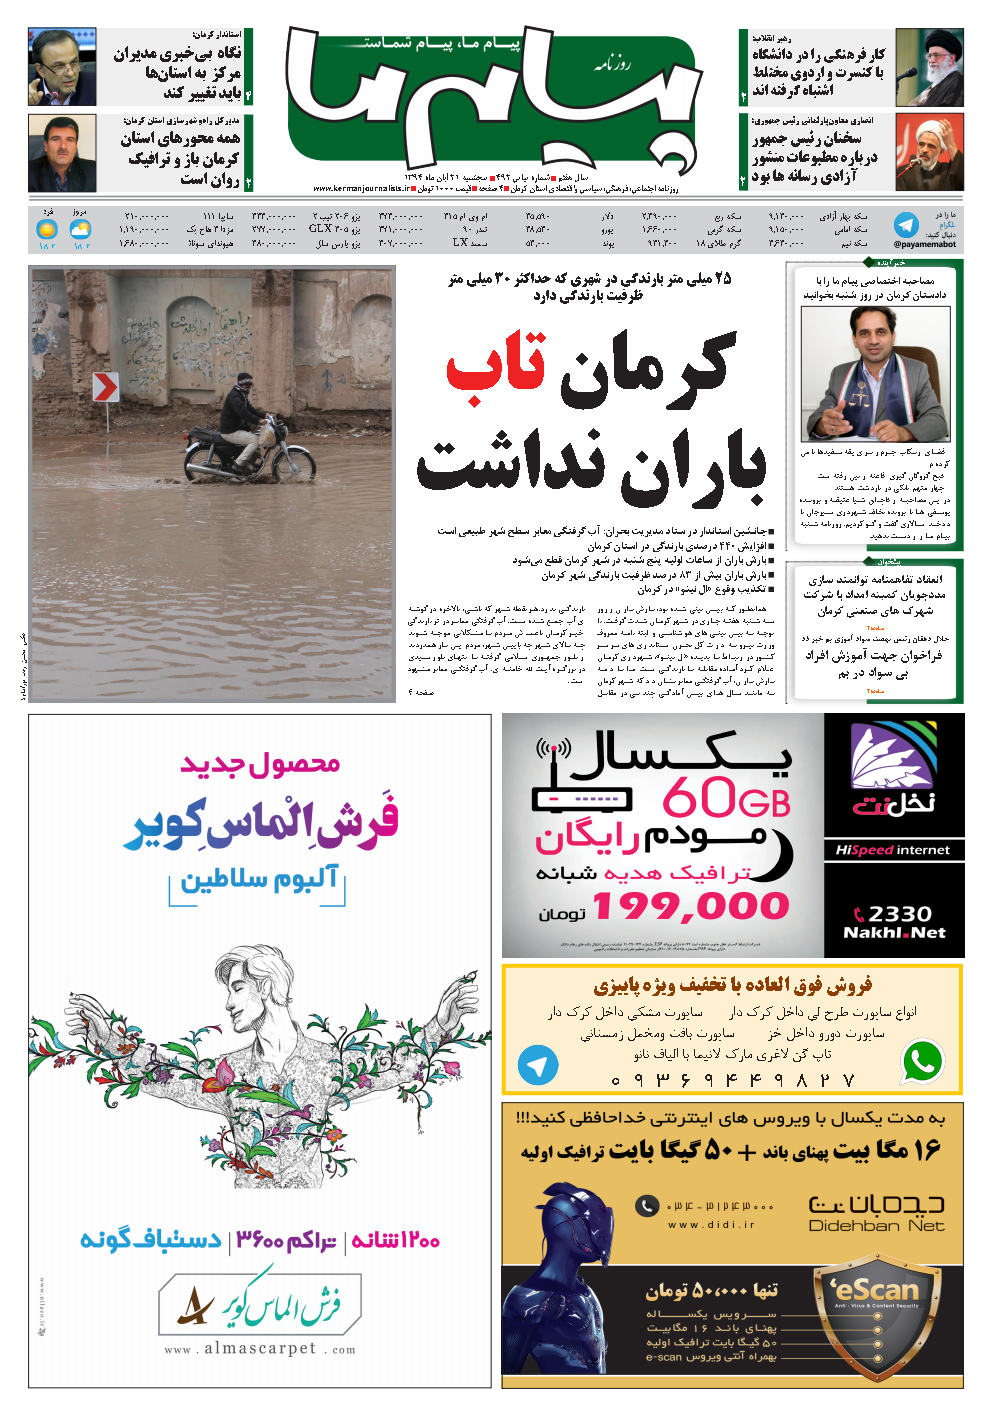 همه محورهای استان کرمان باز و ترافیک روان است